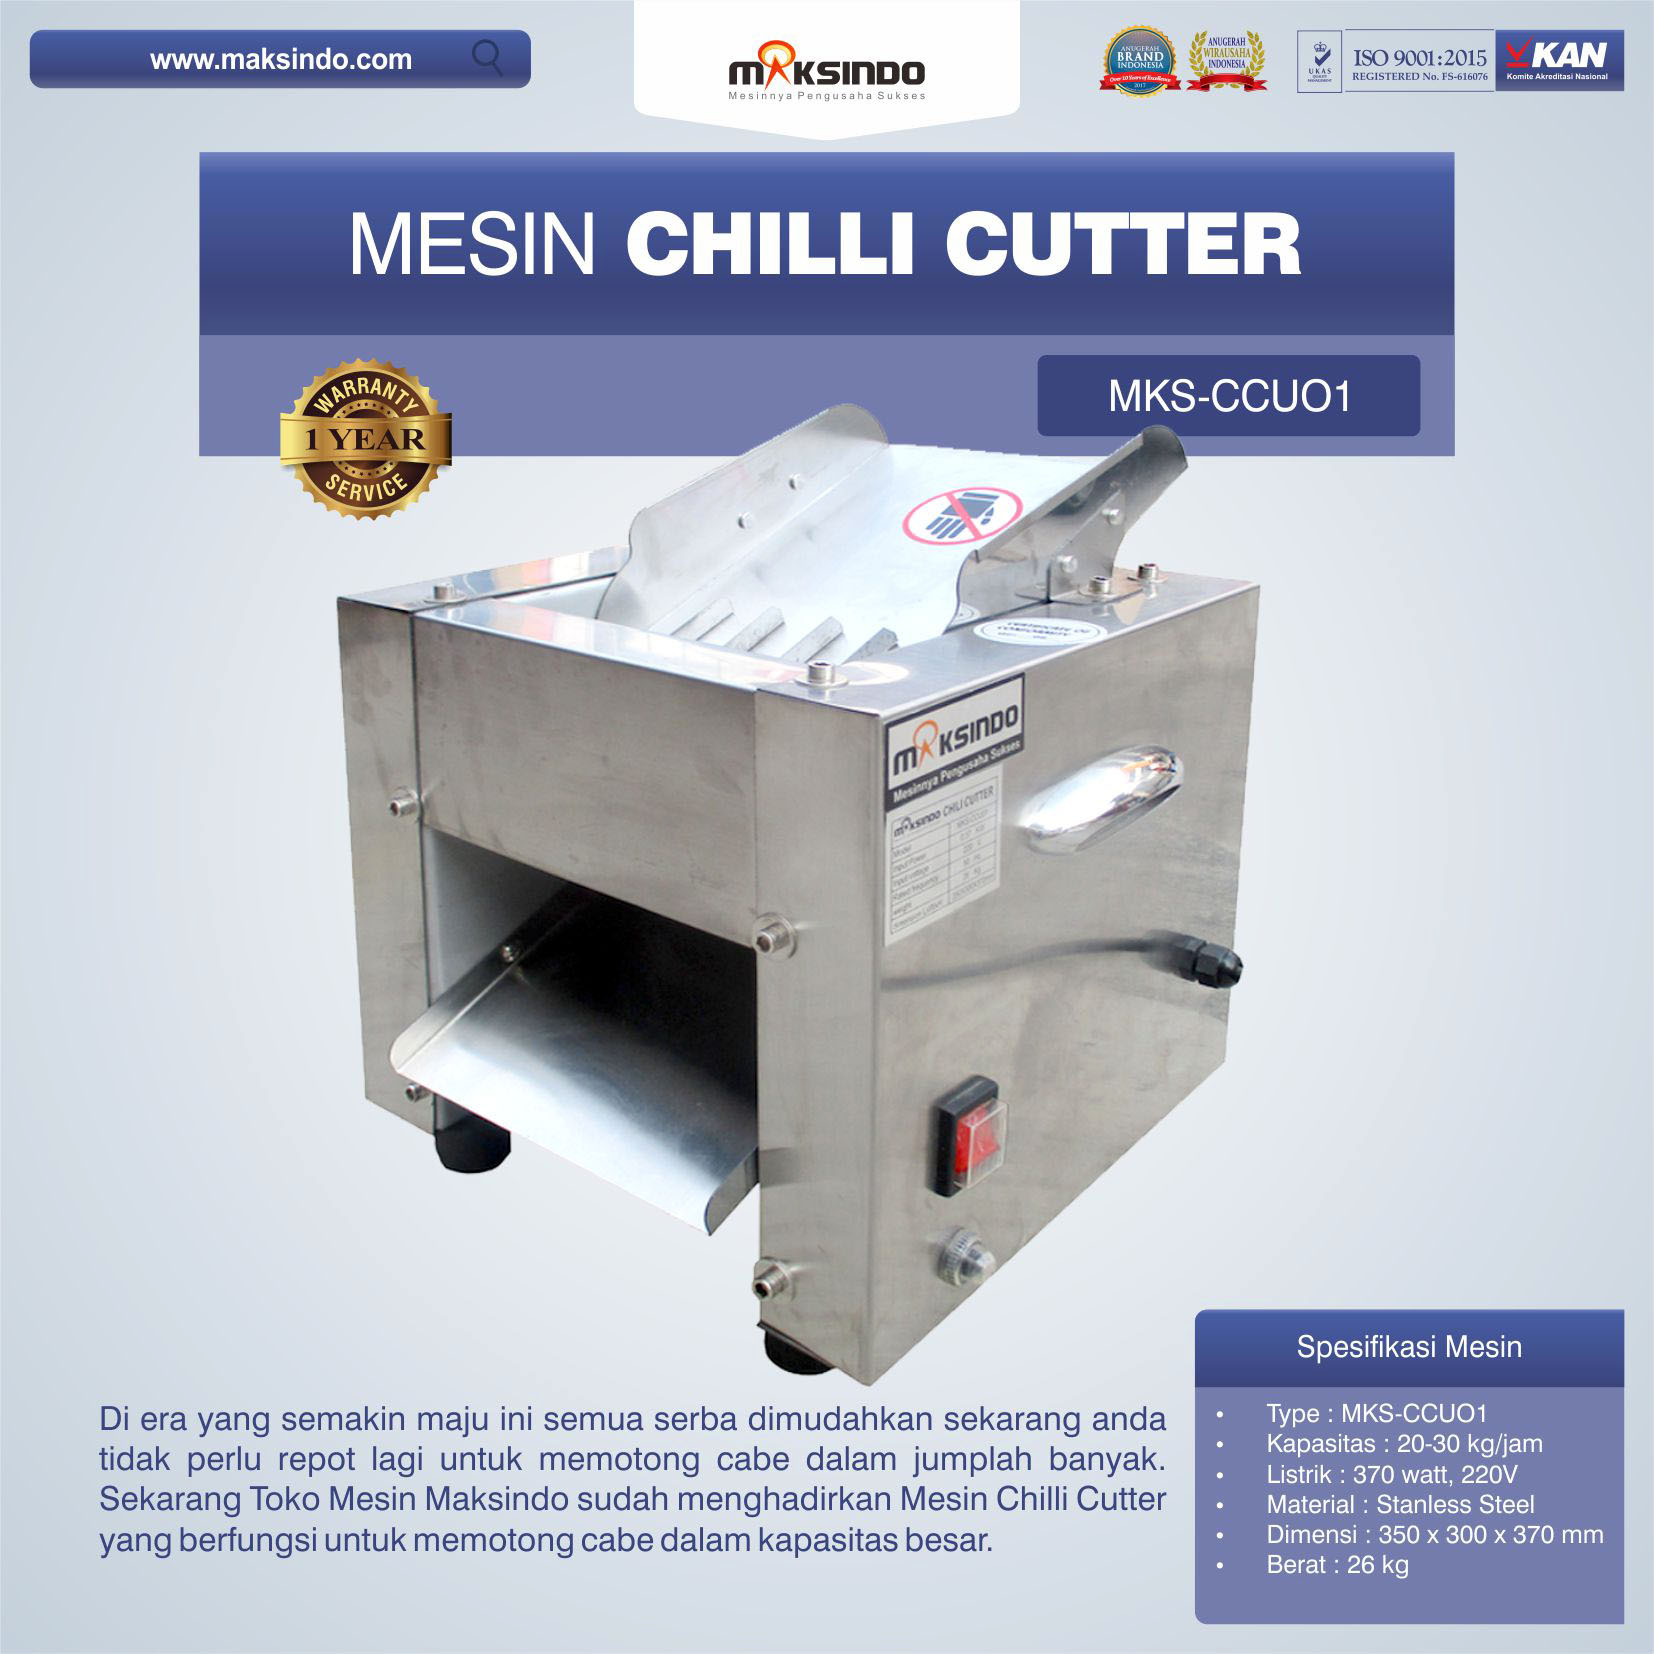 Jual Mesin Chilli Cutter MKS-CCU01 di Blitar